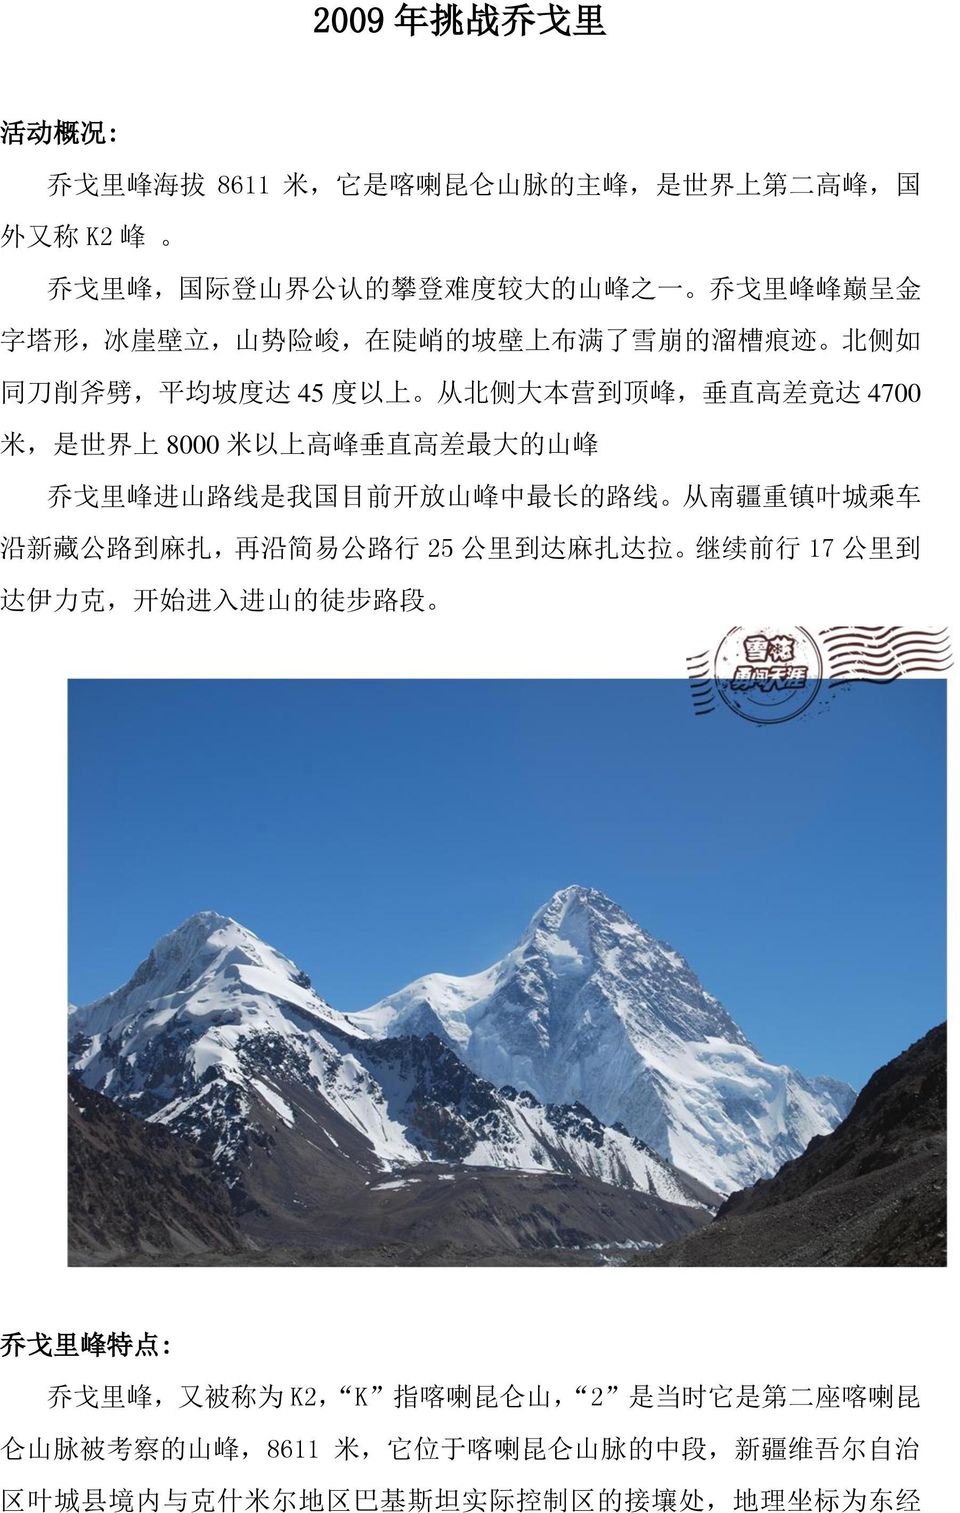 线 是 我 国 目 前 开 放 山 峰 中 最 长 的 路 线 从 南 疆 重 镇 叶 城 乘 车 沿 新 藏 公 路 到 麻 扎, 再 沿 简 易 公 路 行 25 公 里 到 达 麻 扎 达 拉 继 续 前 行 17 公 里 到 达 伊 力 克, 开 始 进 入 进 山 的 徒 步 路 段 乔 戈 里 峰 特 点 : 乔 戈 里 峰, 又 被 称